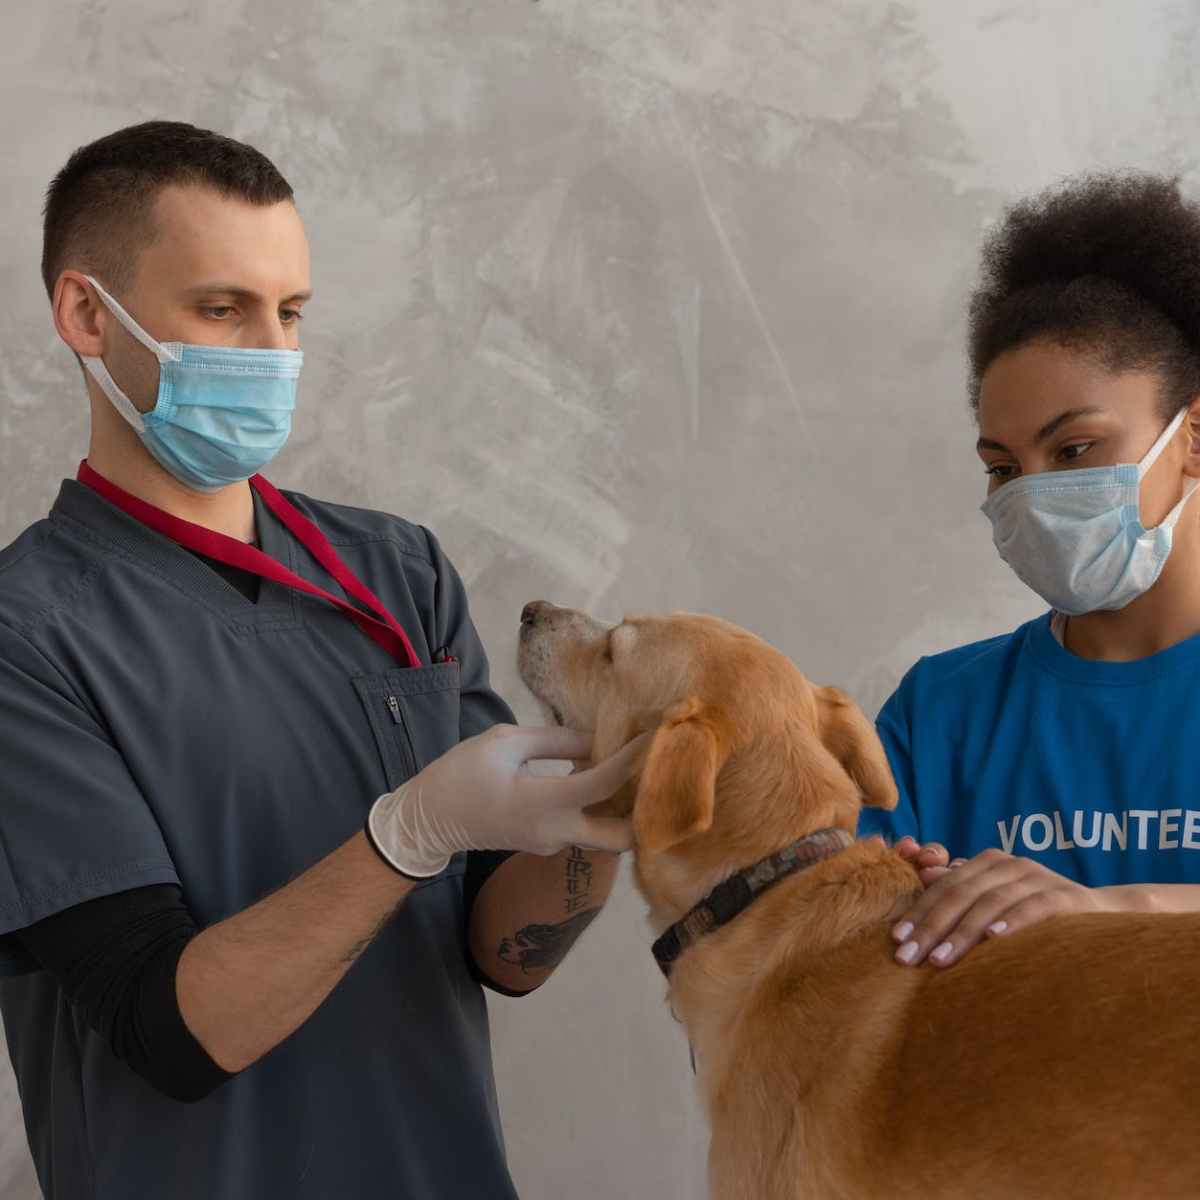 Tierkrankenversicherung – eine sinnvolle Investition